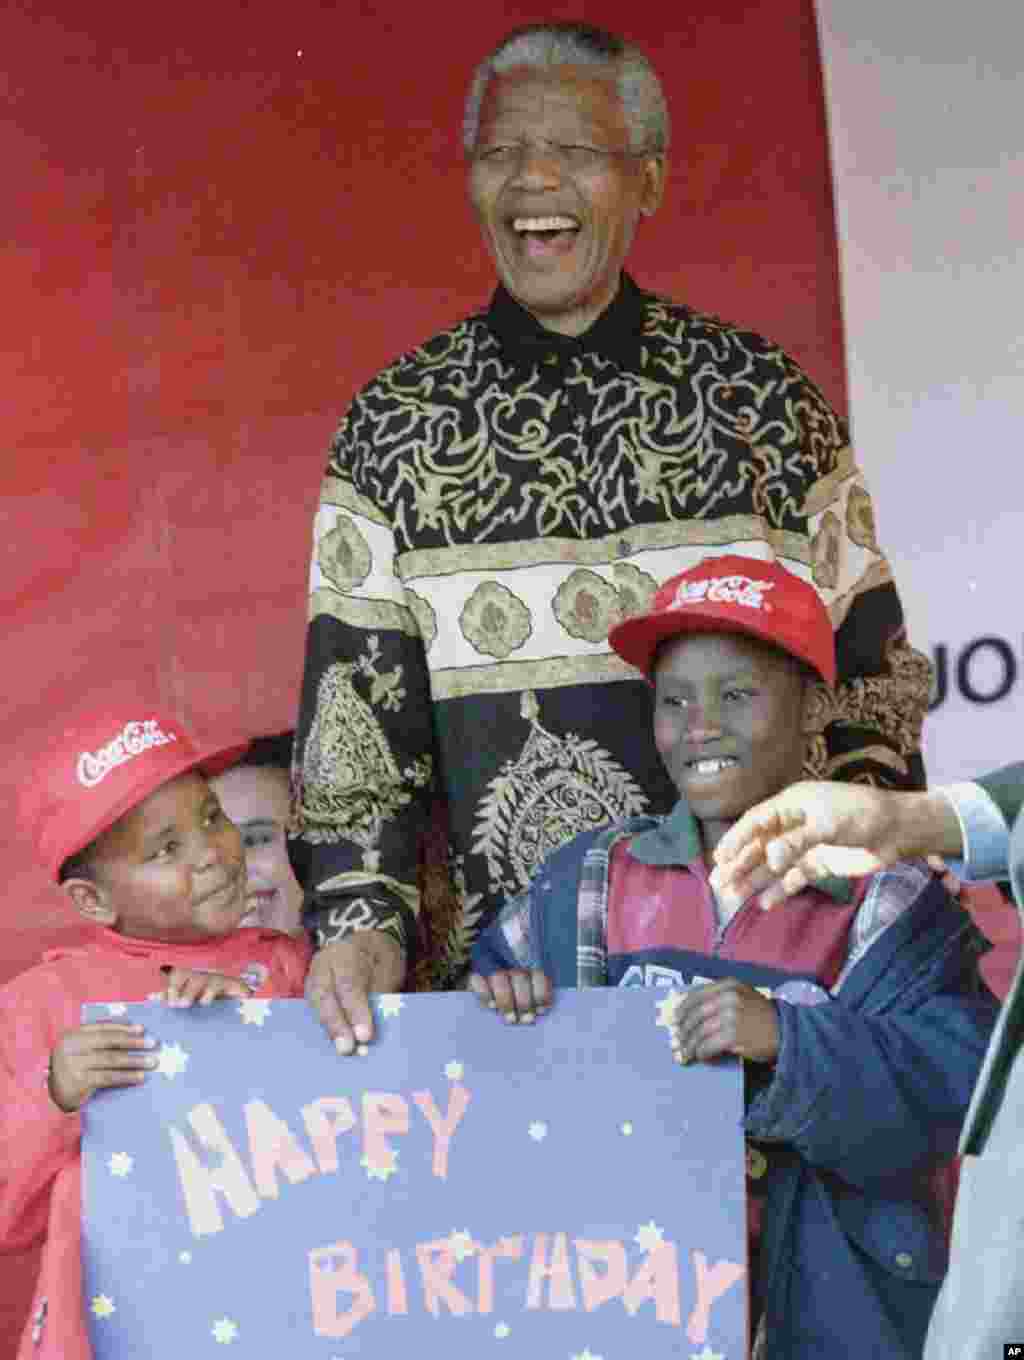  L’ancien président sud-africain Nelson Mandela fête la veille de son 77e anniversaire avec des enfants à Johannesburg, où il a obtenu son premier emploi en tant que policier.